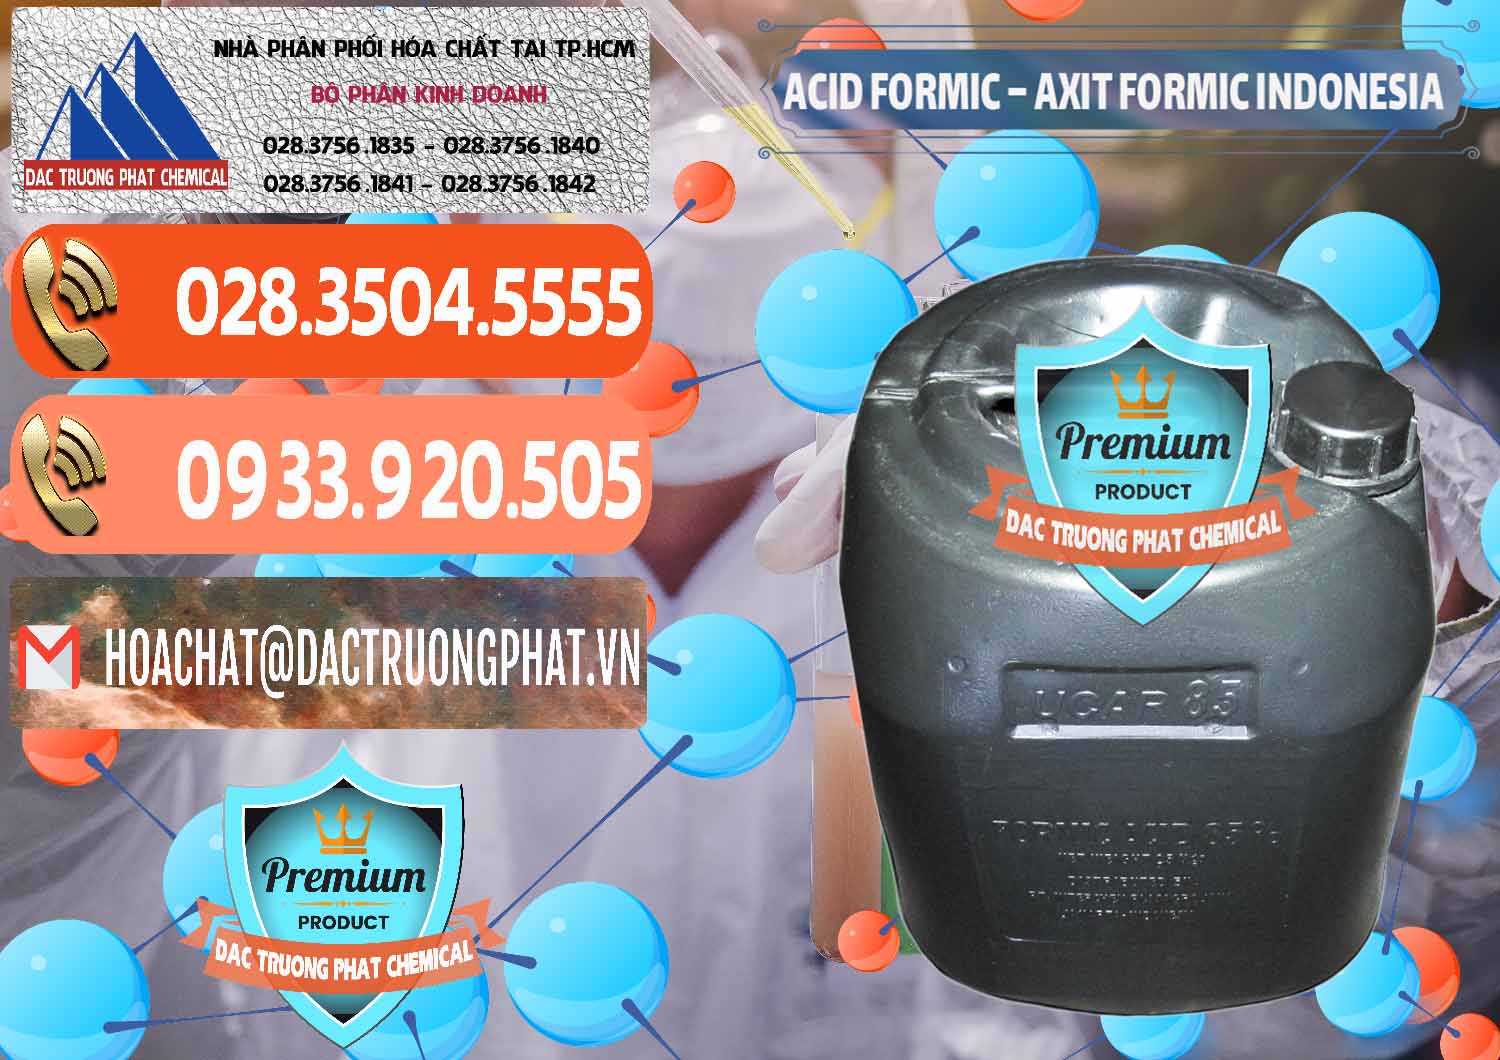 Cty cung cấp - bán Acid Formic - Axit Formic Indonesia - 0026 - Đơn vị phân phối và cung cấp hóa chất tại TP.HCM - hoachatmientay.com